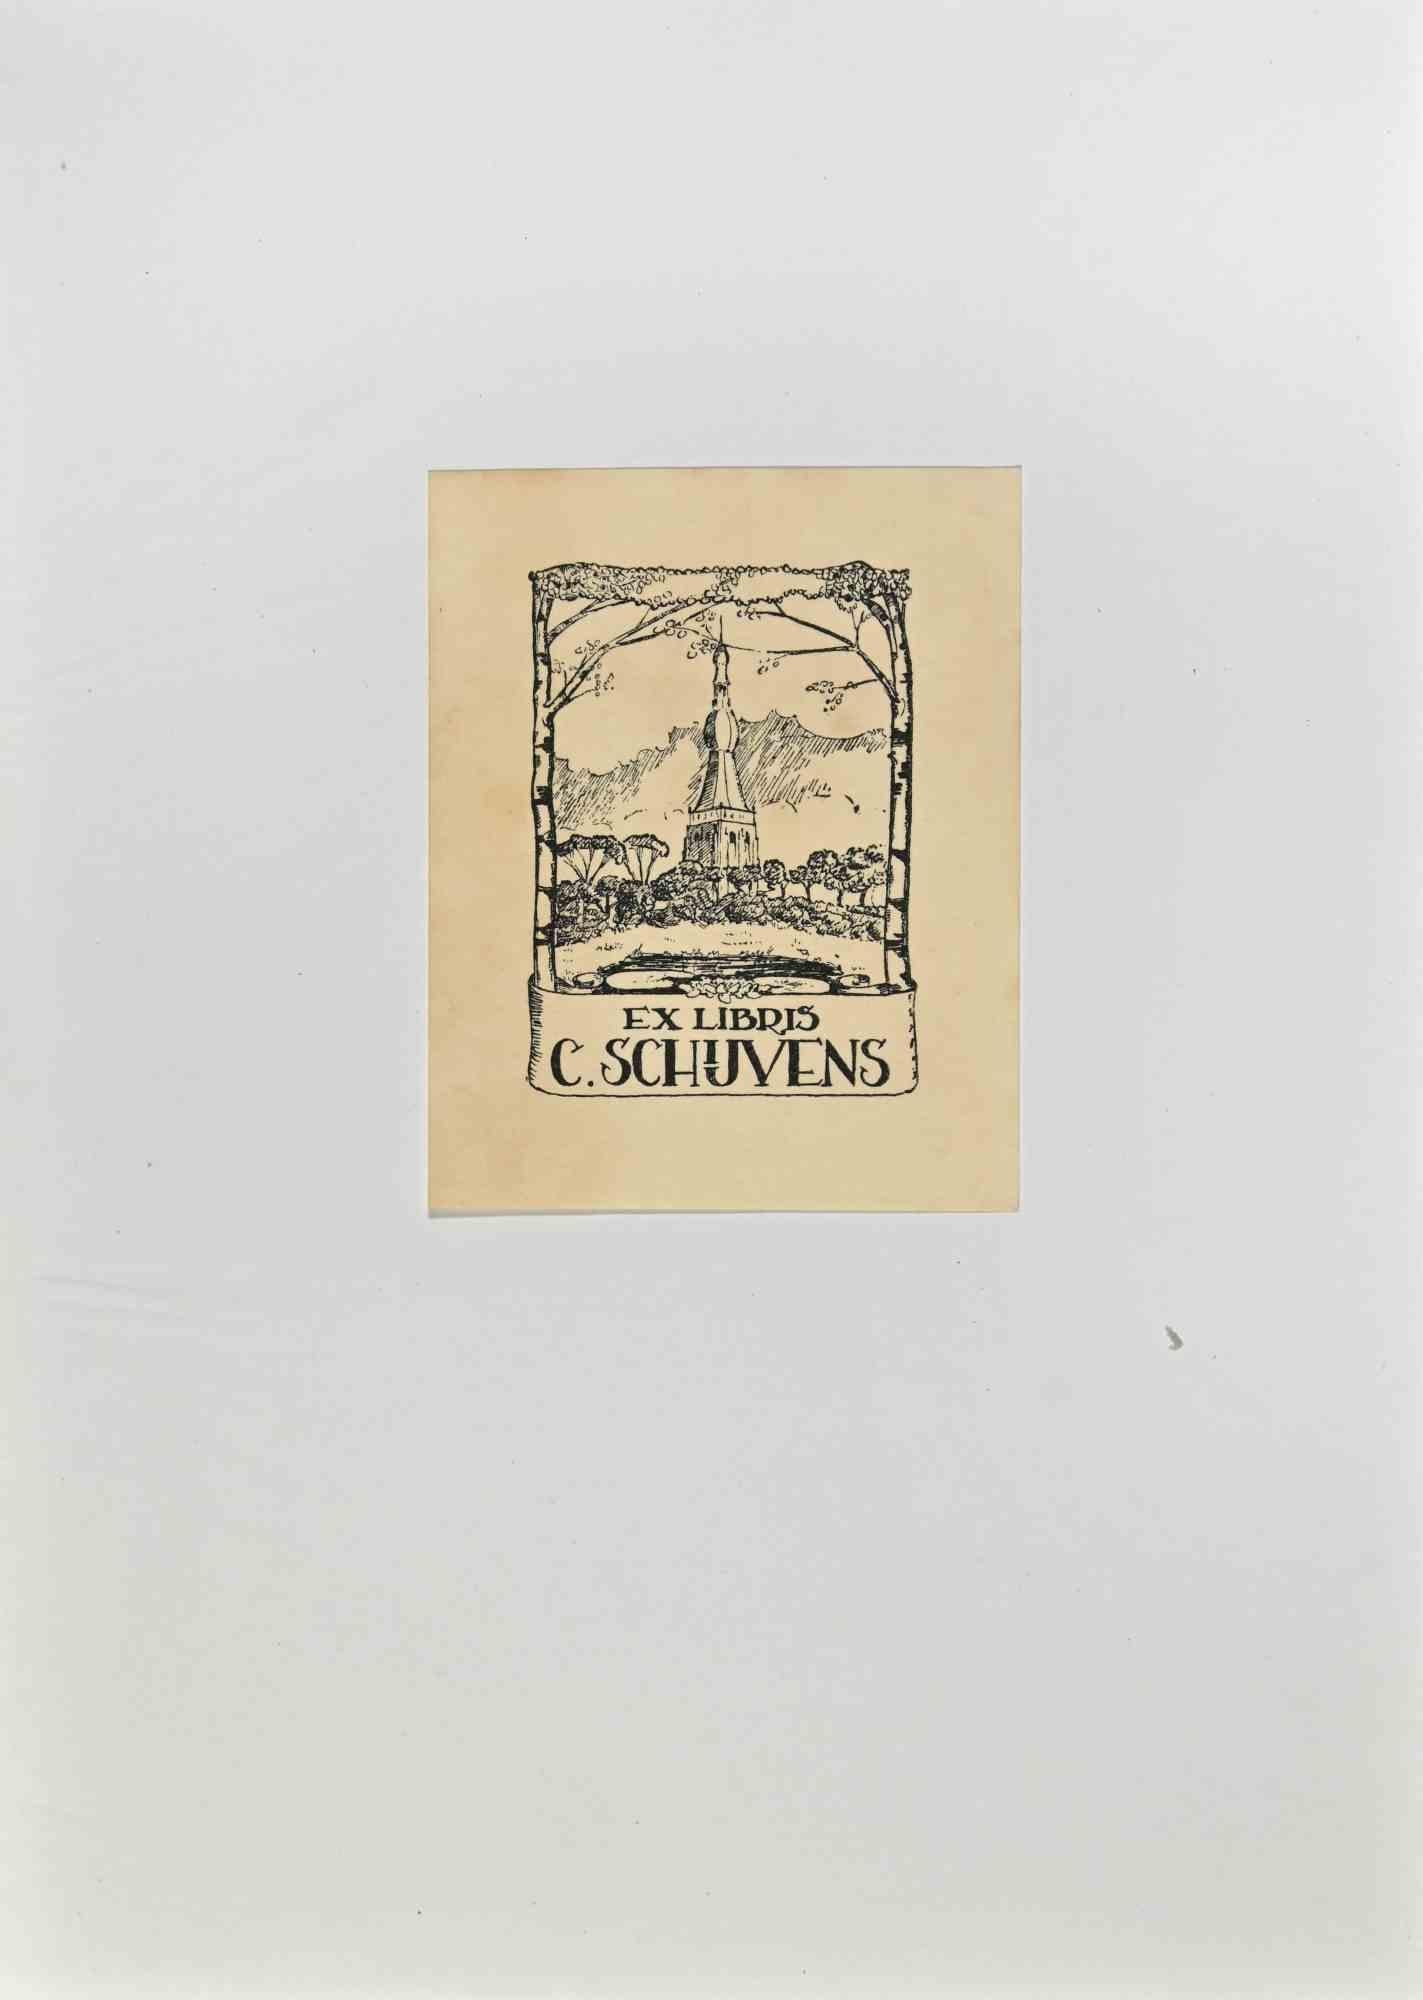  Ex Libris -C. Schuvens - Gravure sur bois - Milieu du XXe siècle - Art de Unknown